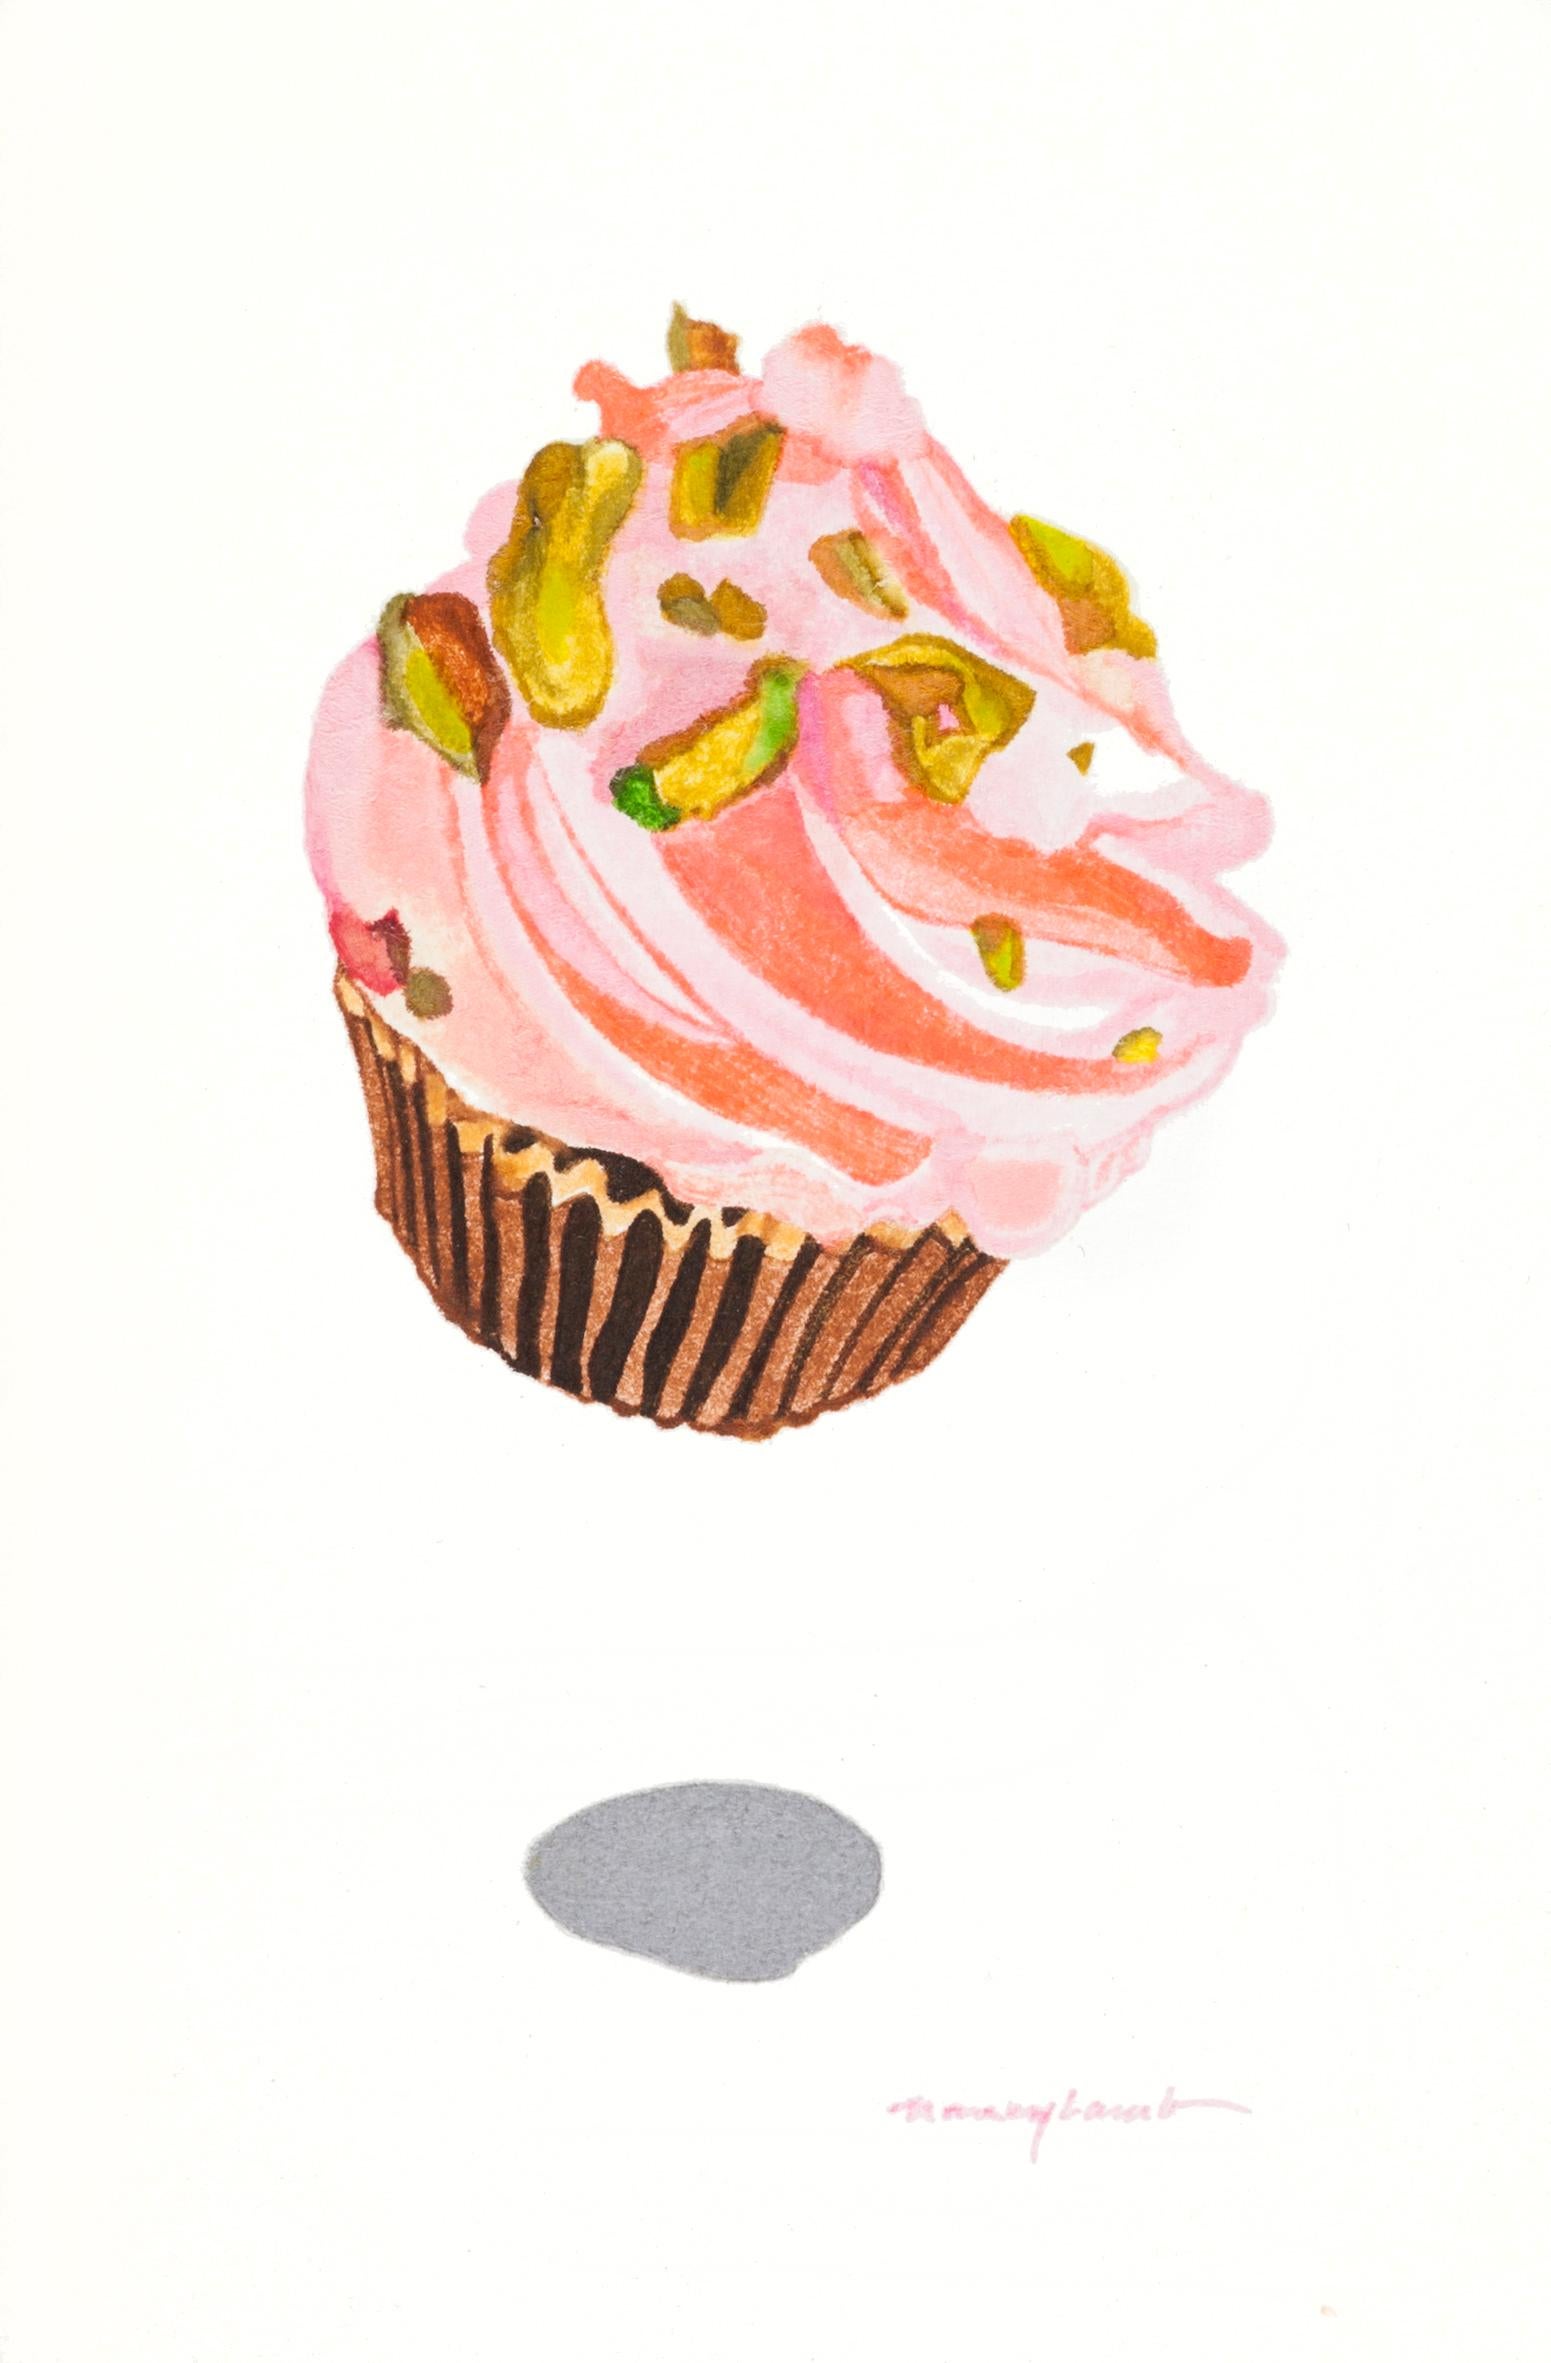 Still-Life Nancy Lamb  - Petite aquarelle contemporaine de gâteau à dessert en forme de coupe de fraise rose avec pistachios